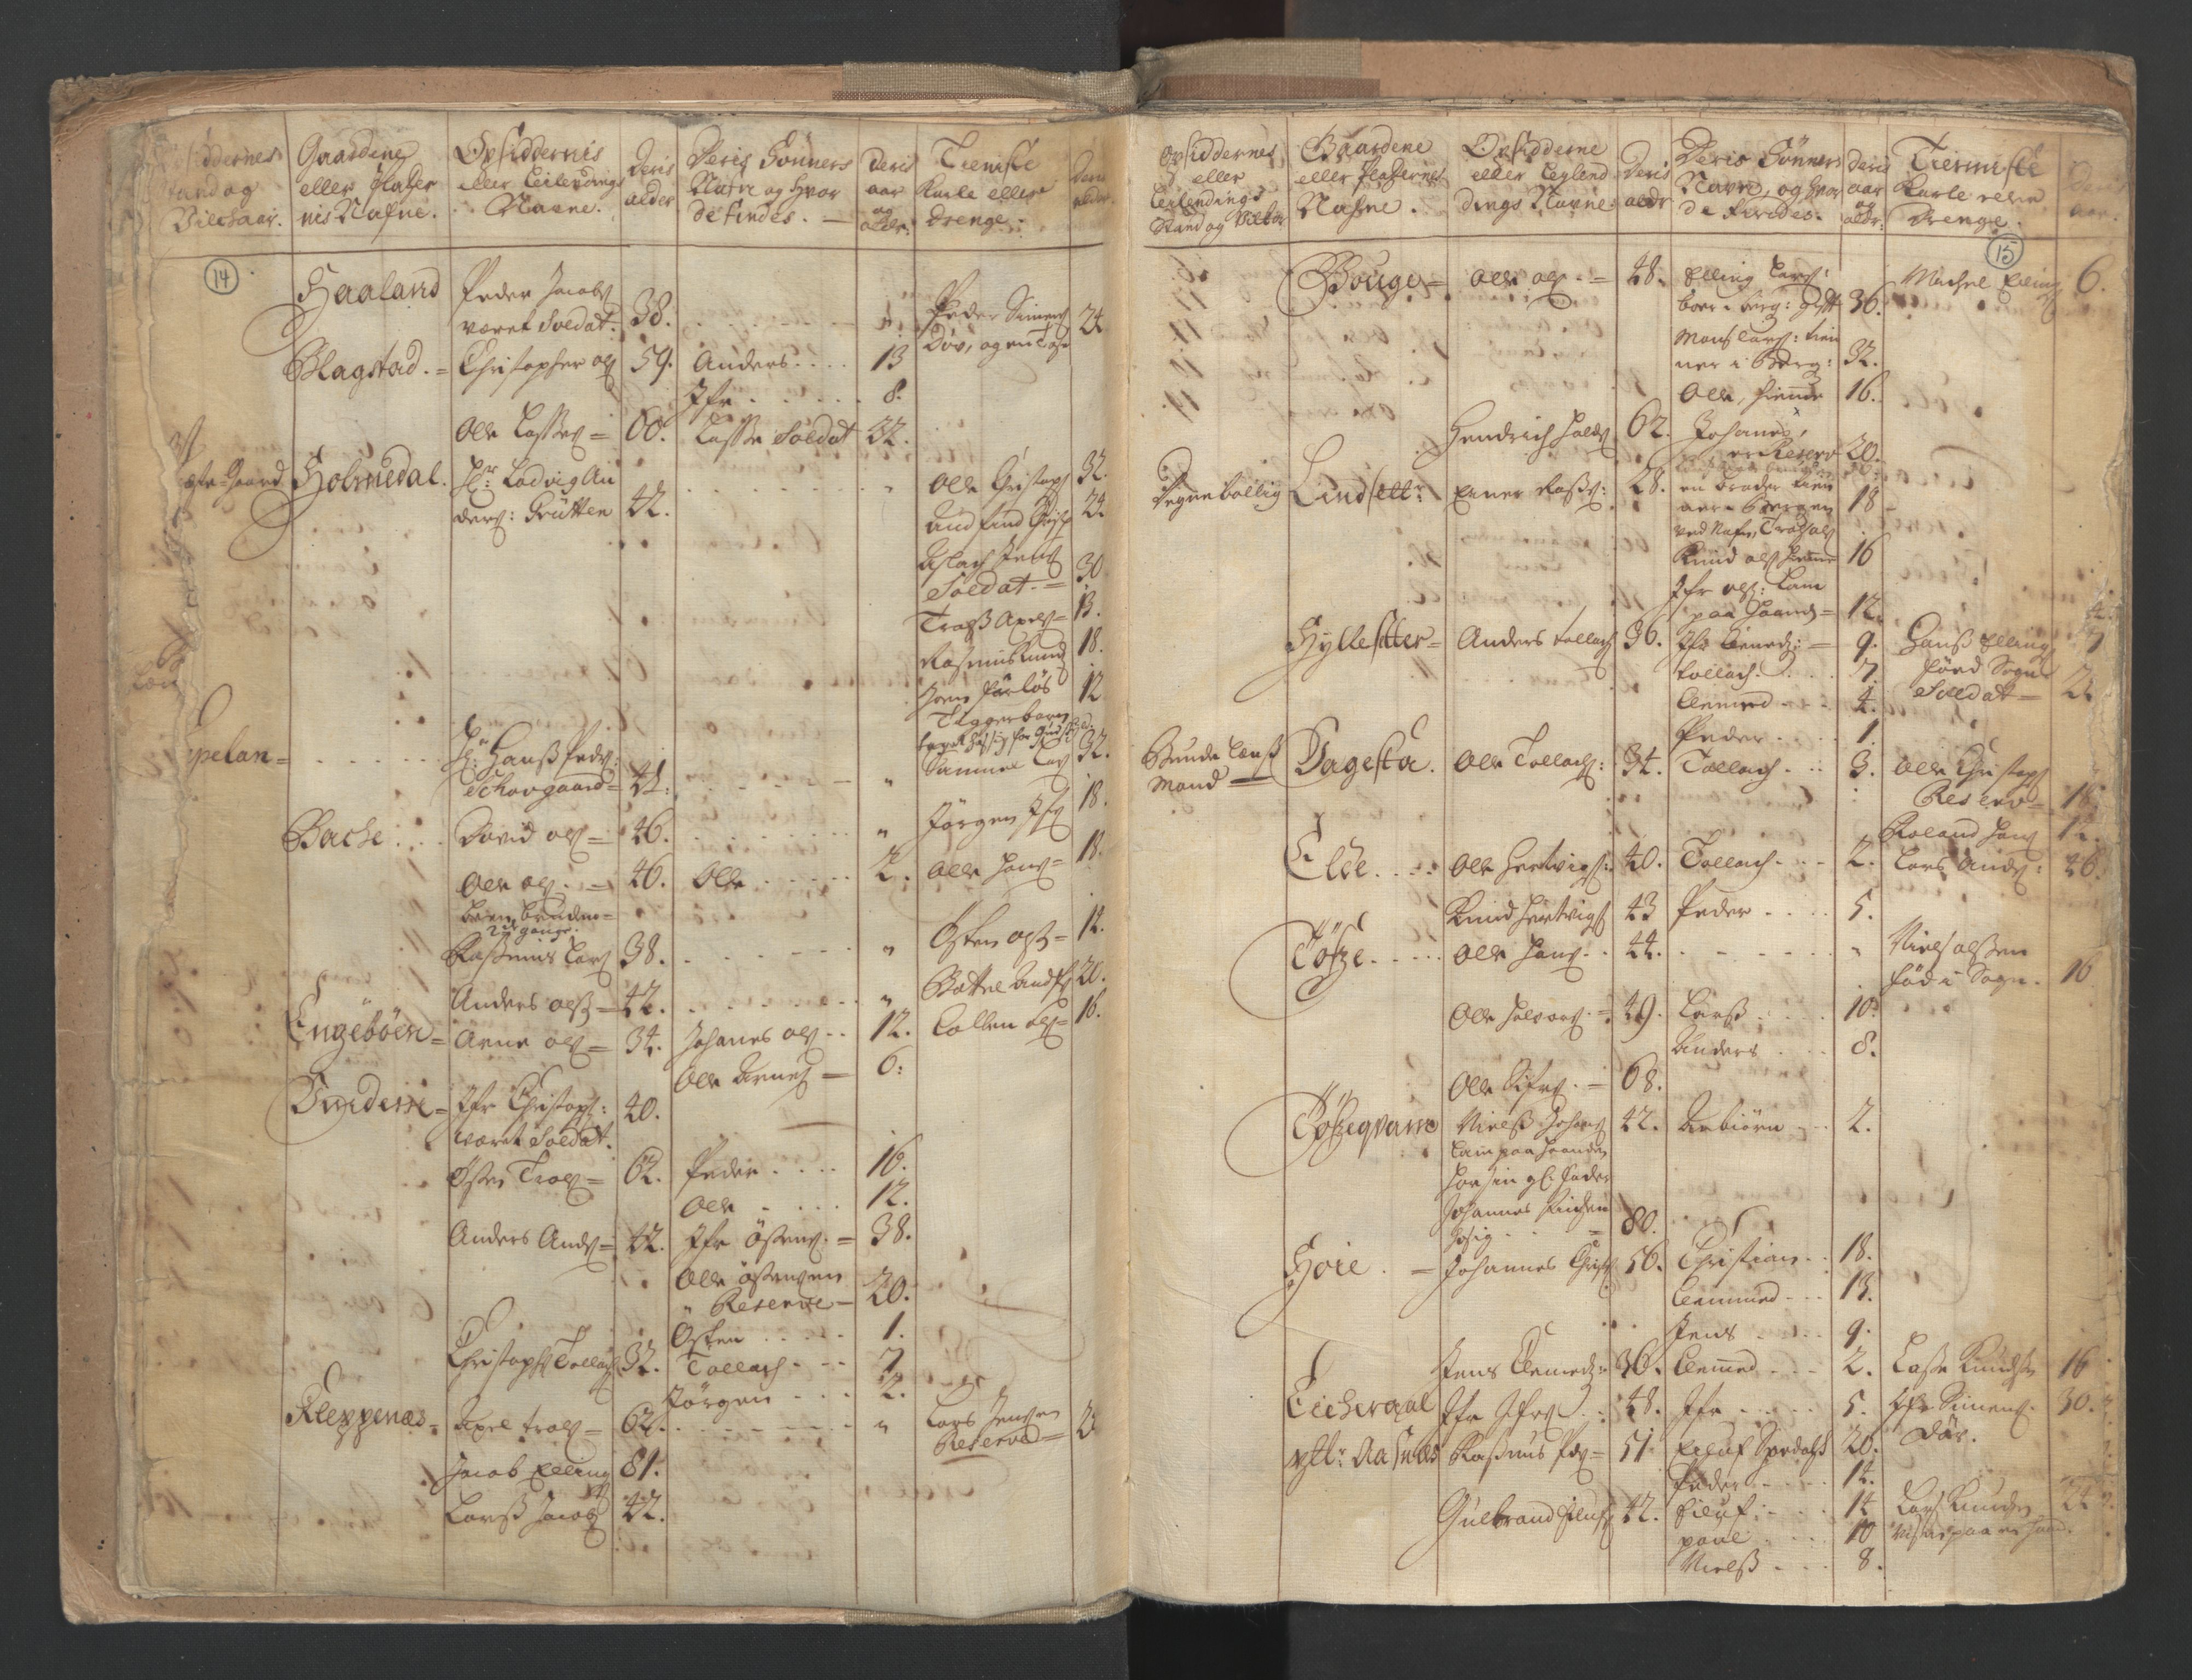 RA, Census (manntall) 1701, no. 9: Sunnfjord fogderi, Nordfjord fogderi and Svanø birk, 1701, p. 14-15